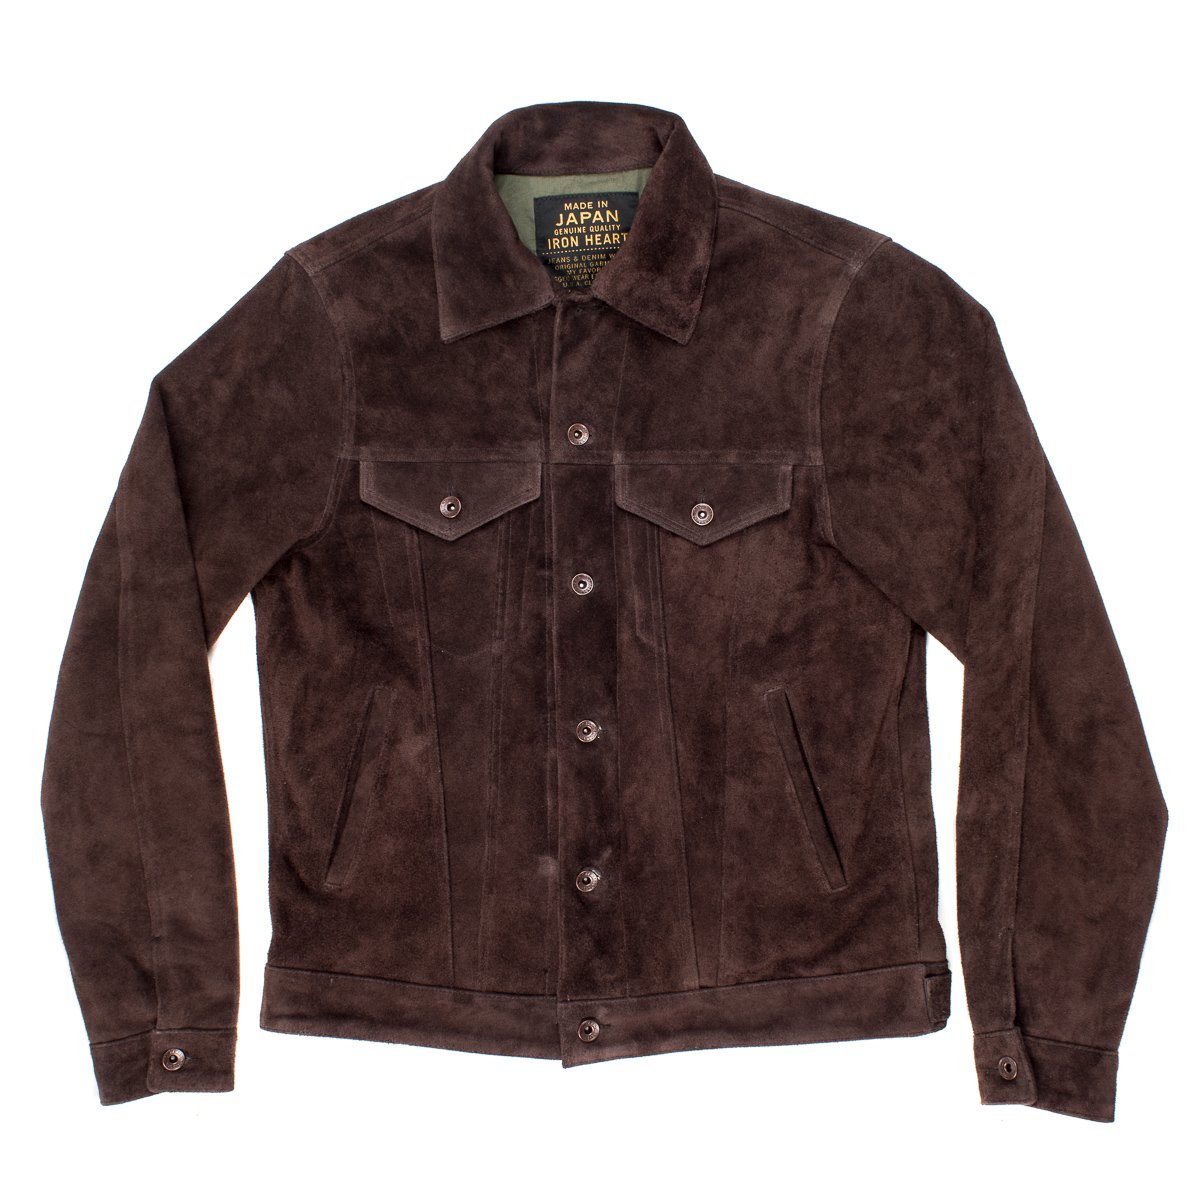 Iron Heart - IHJ-49 Brown Leather Type III Jacket